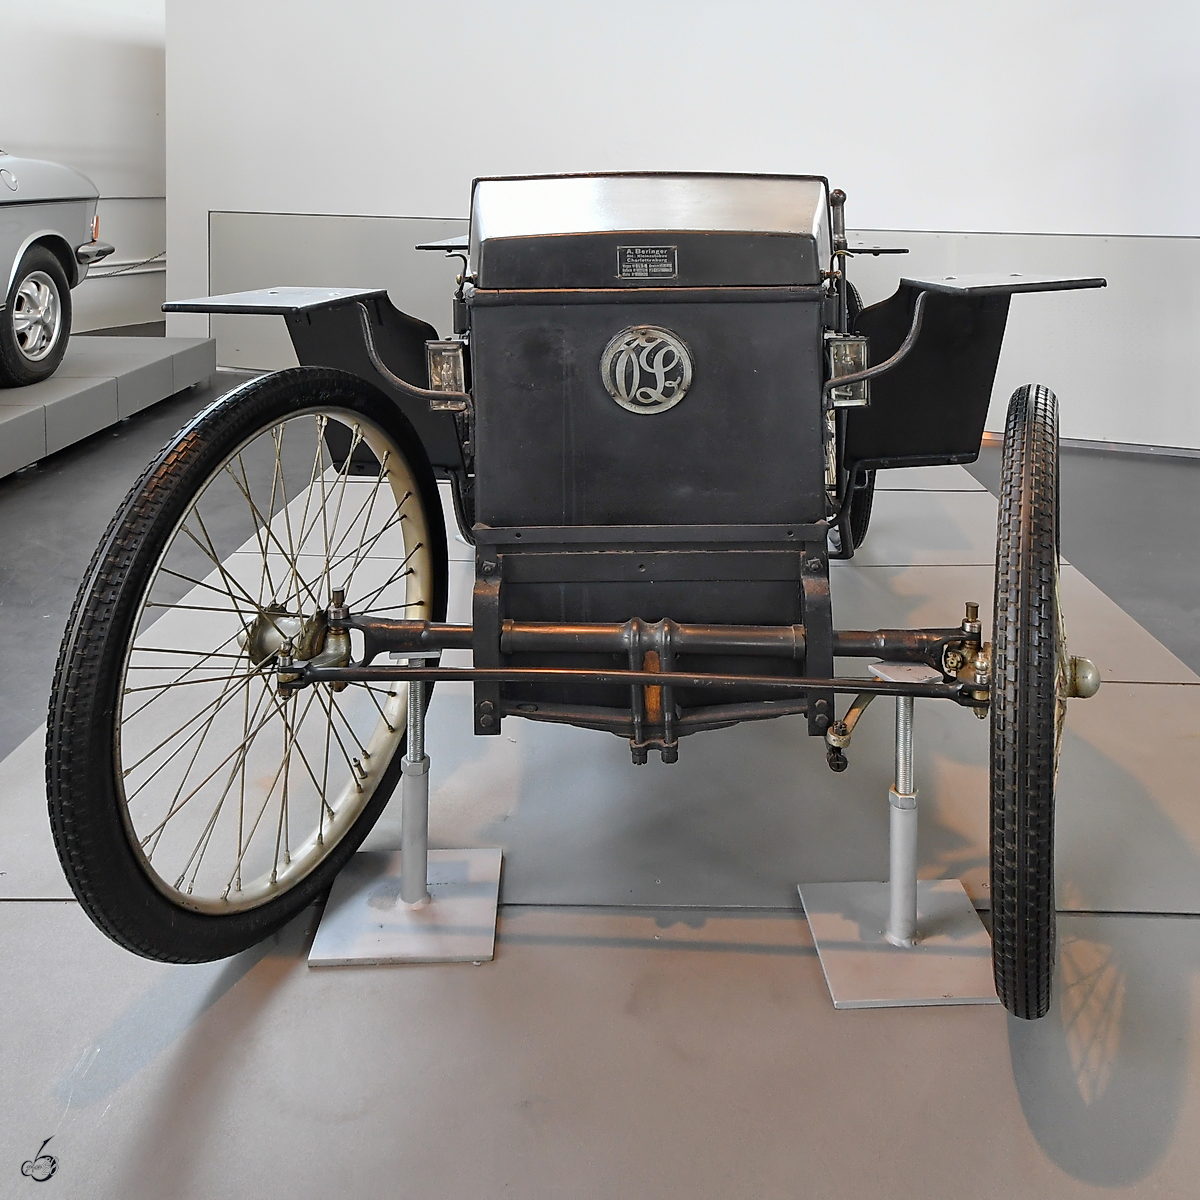 Dieser Slaby-Beringer Elektrowagen von 1920 war Mitte August 2020 im Verkehrszentrum des Deutschen Museums in München zu sehen.